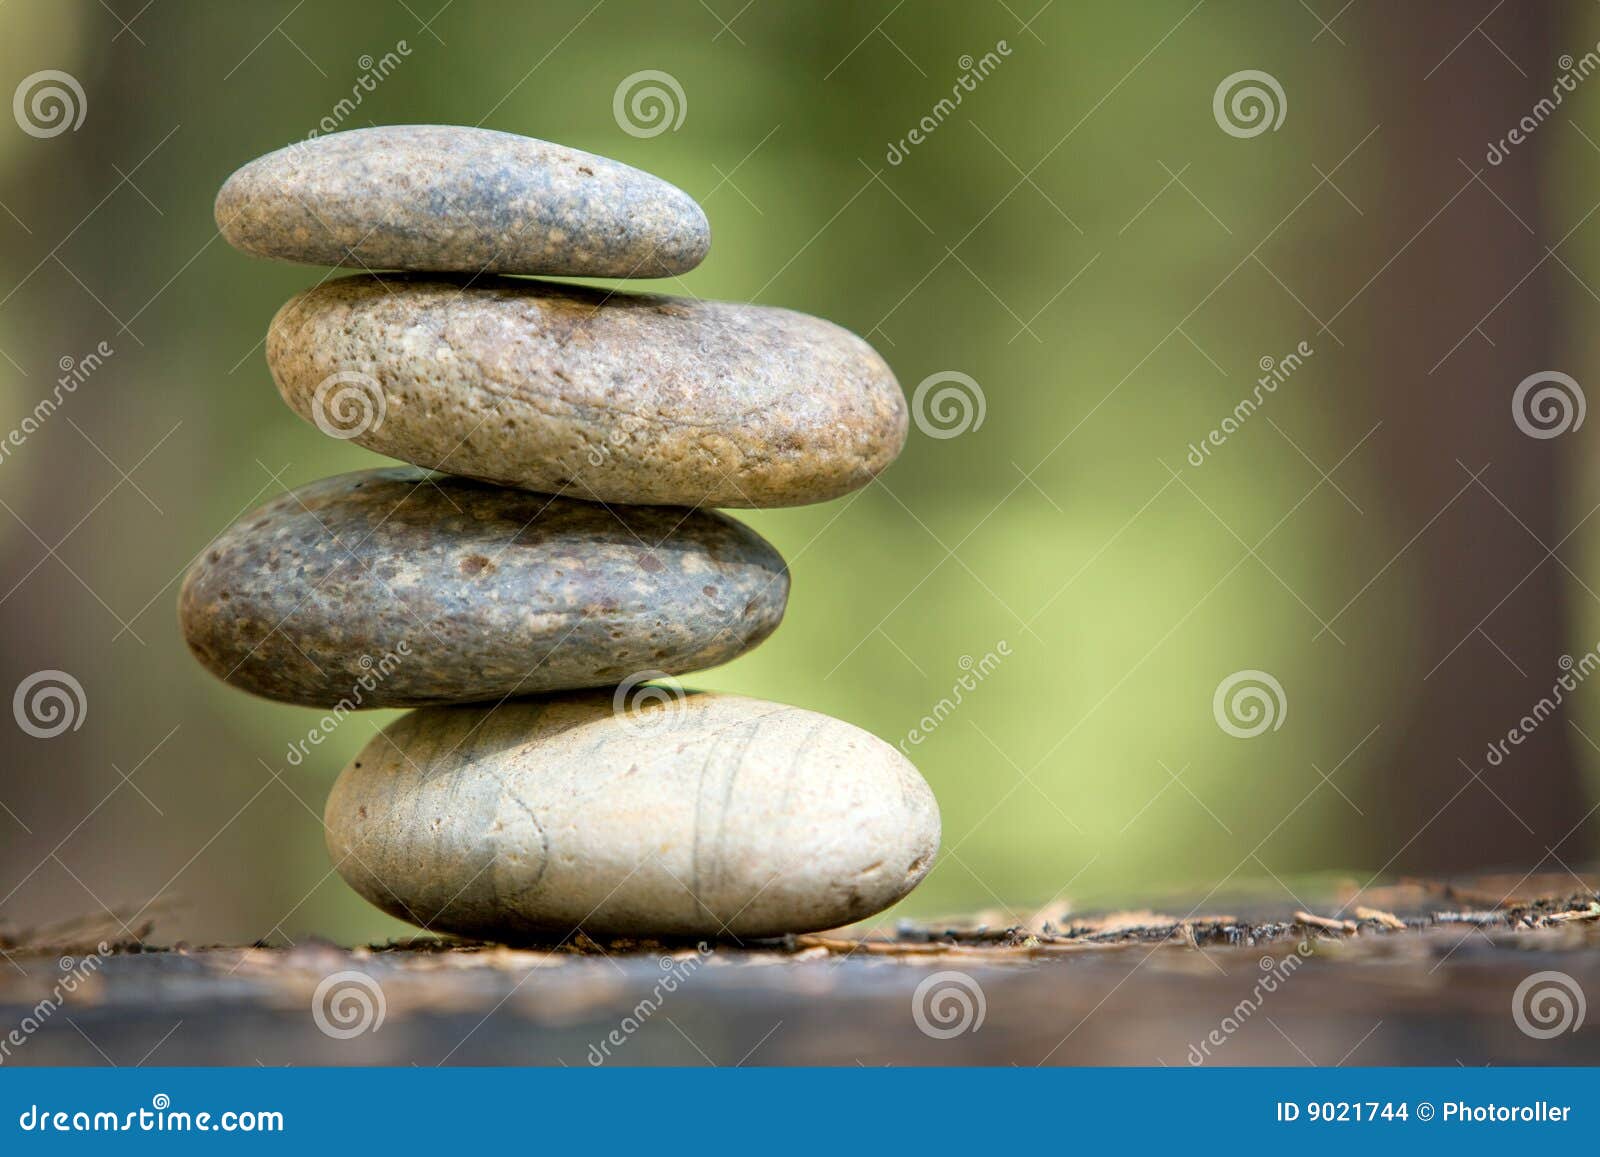 zen stones stacked